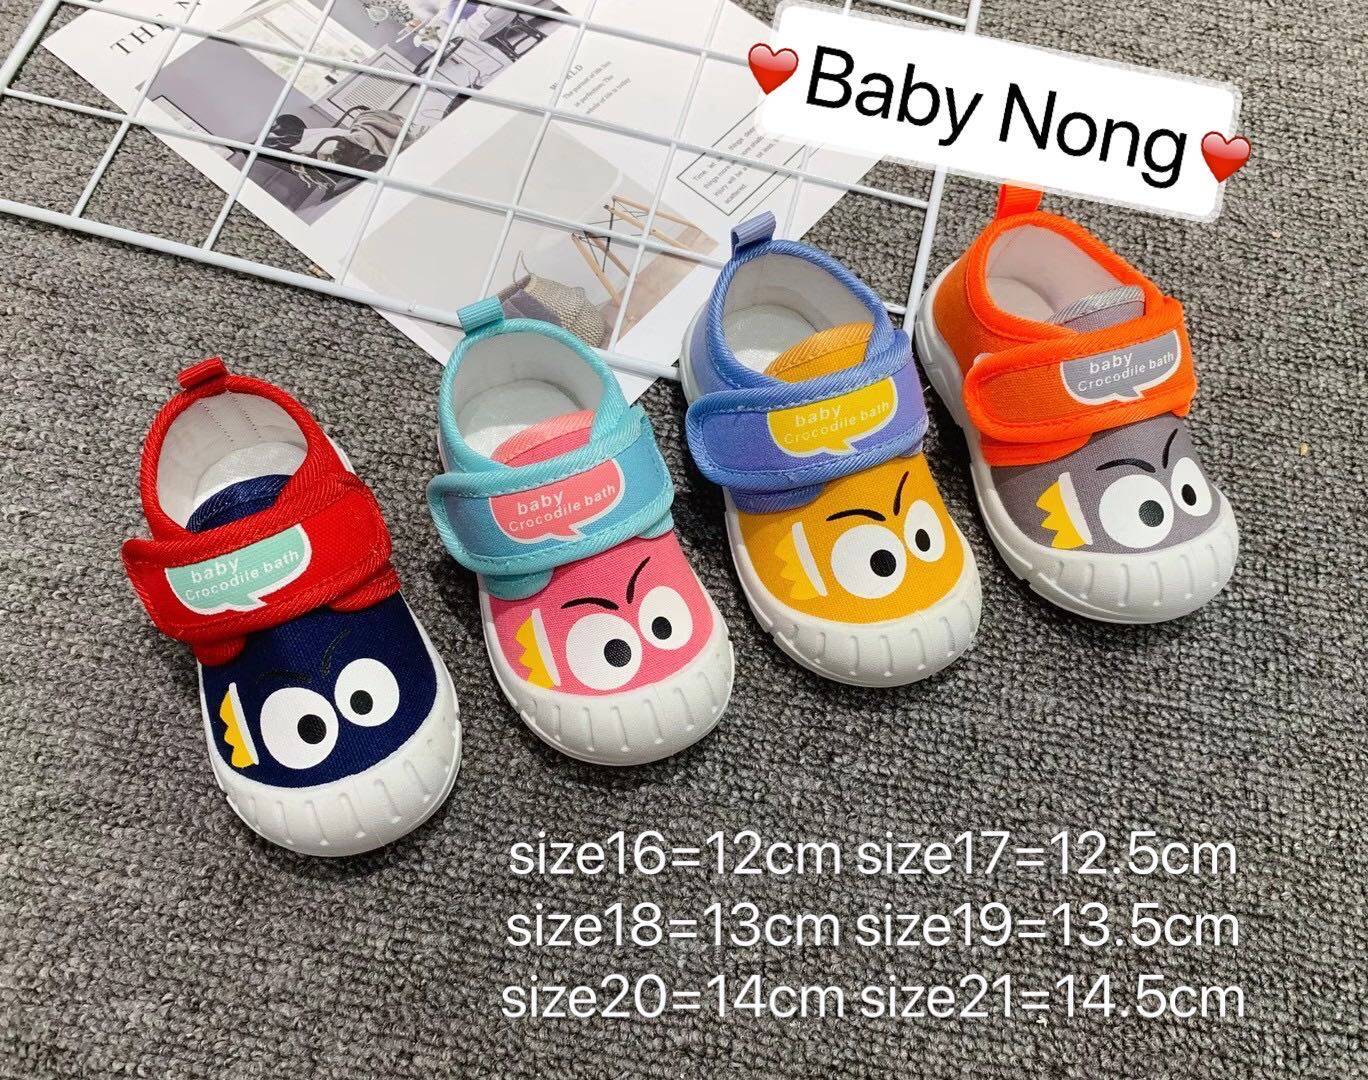 Baby Nong ใหม่ รองเท้าเด็กวัยหัดเดิน รองเท้าผ้าใบ รองเท้าเป่าโถวรองเท้าเด็กวัยหัดเดิน 1-3ขวบ